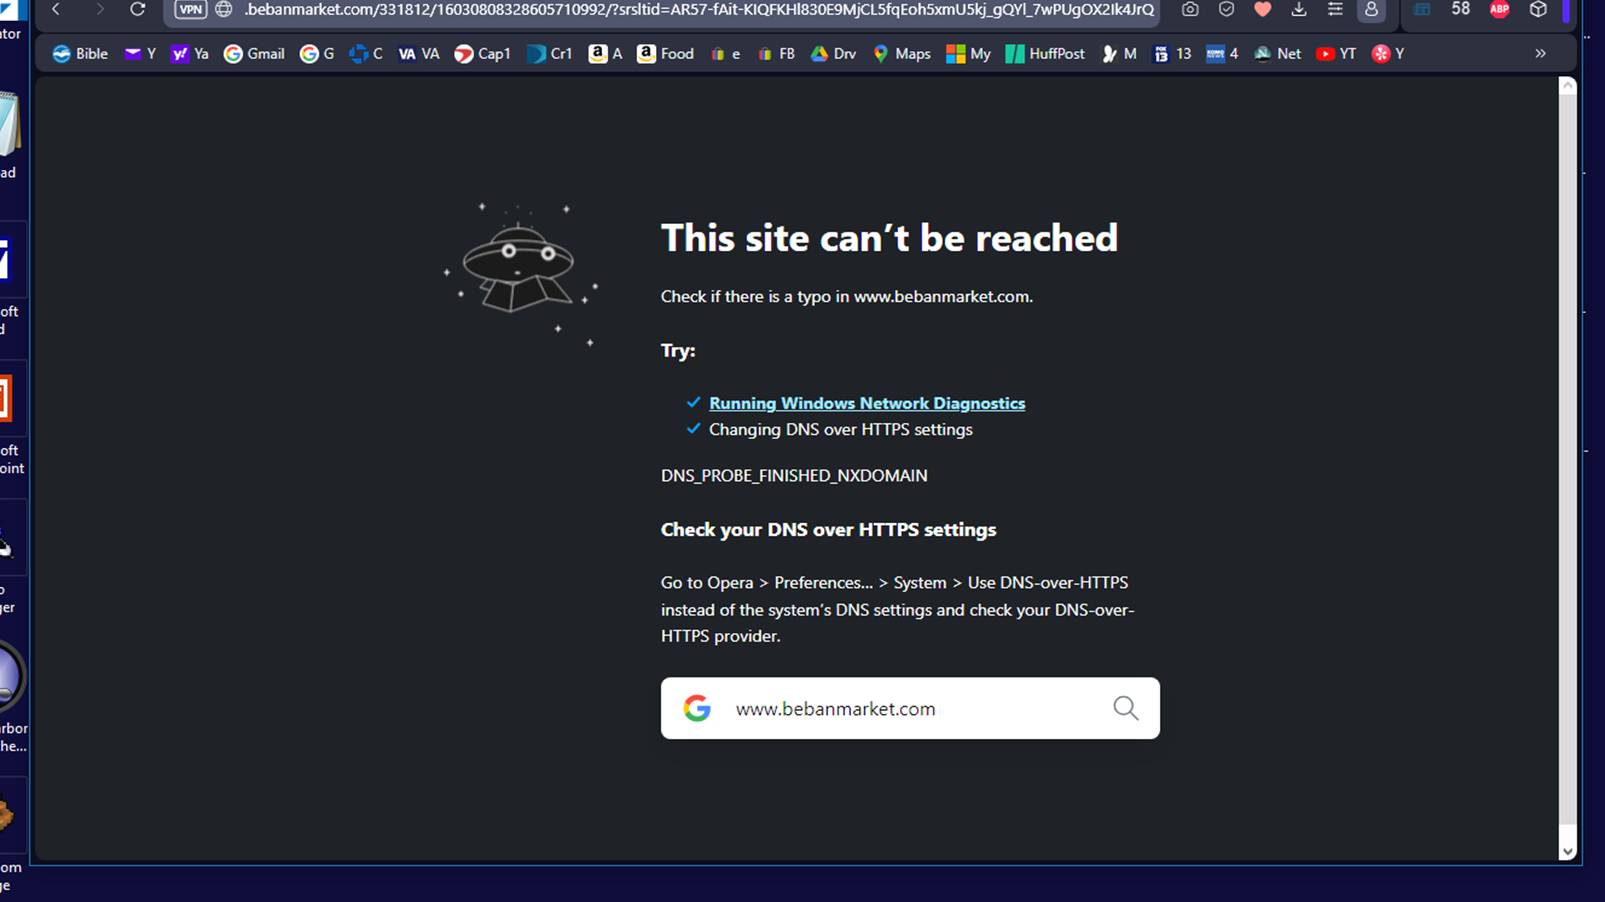 Original Web Page taken down